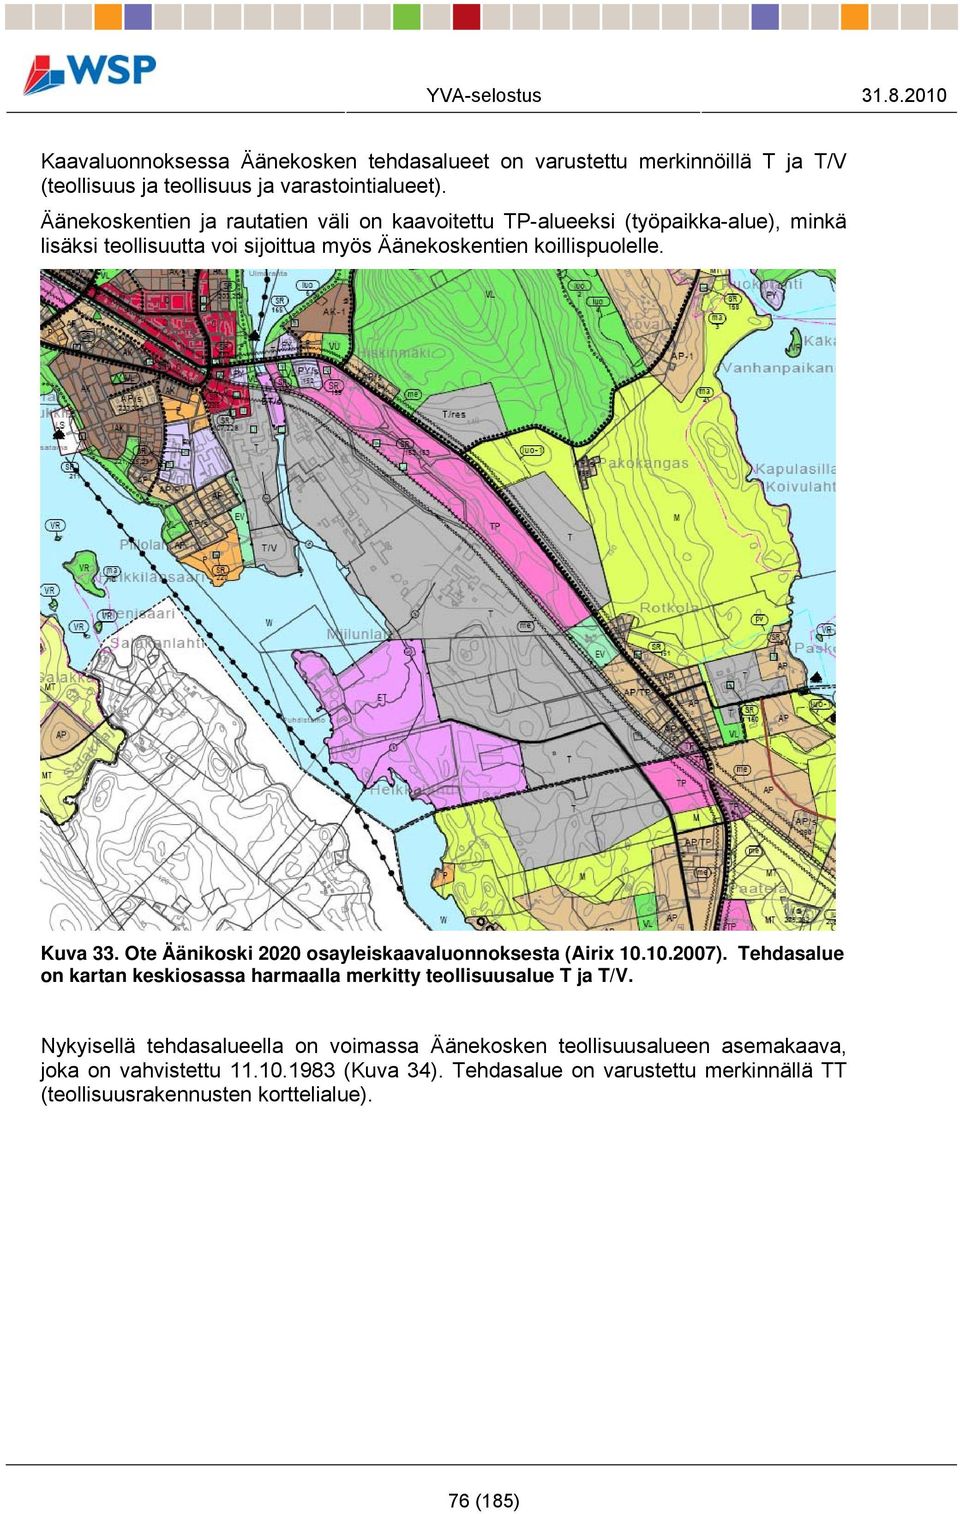 Ote Äänikoski 2020 osayleiskaavaluonnoksesta (Airix 10.10.2007). Tehdasalue on kartan keskiosassa harmaalla merkitty teollisuusalue T ja T/V.